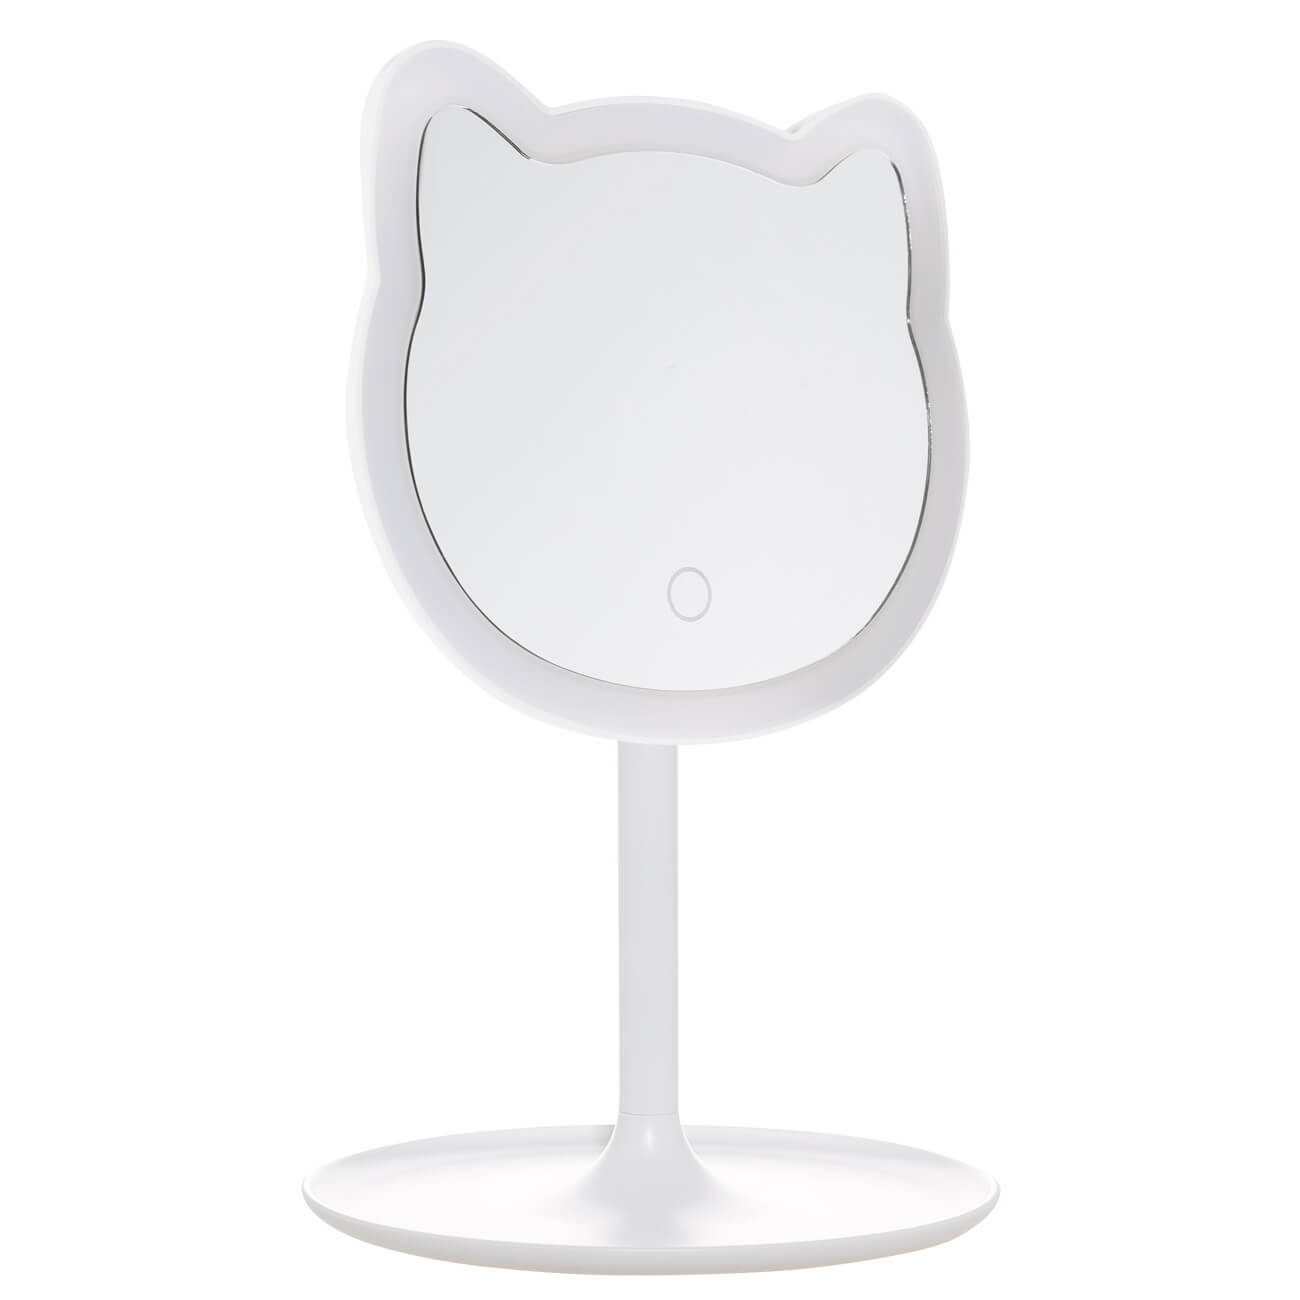 Зеркало настольное, 29 см, с подсветкой, на подставке, пластик, белое, Кот, Cat настольное косметическое зеркало swensa